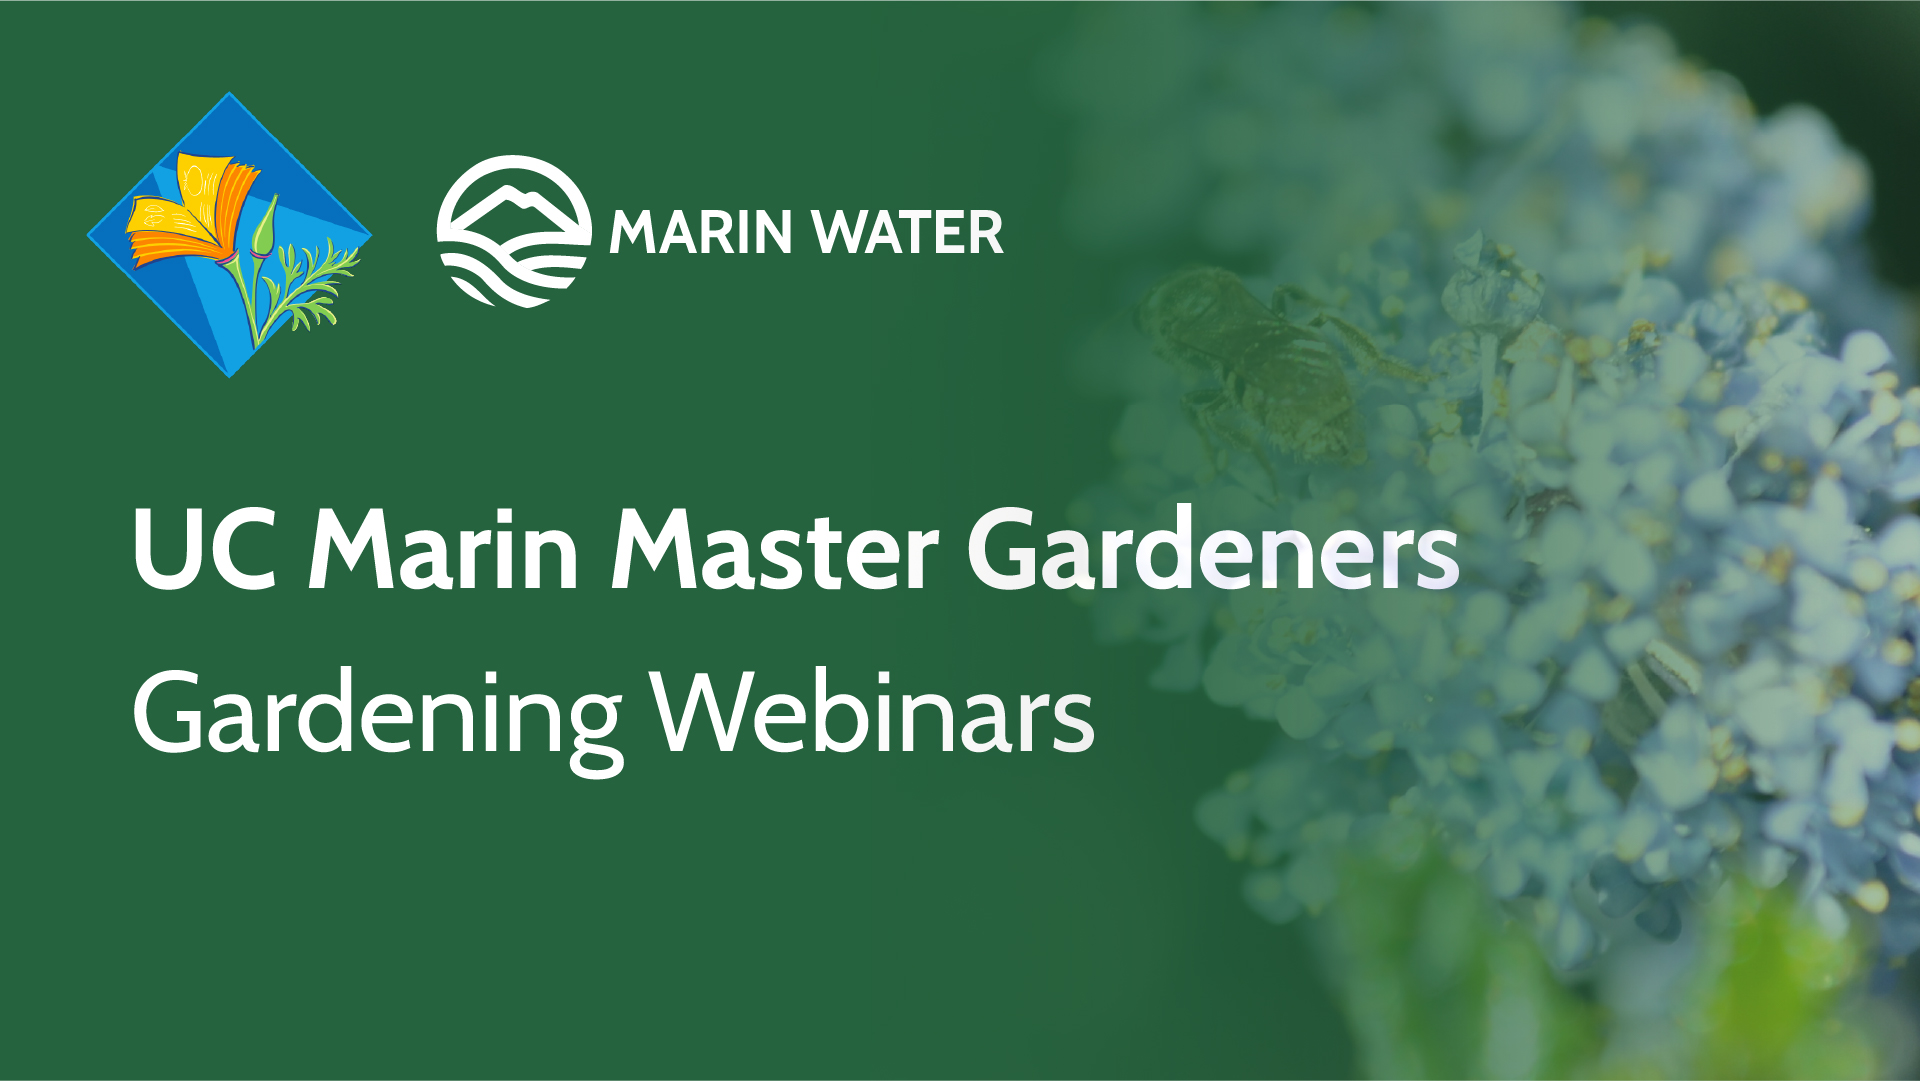 Marin Master Gardeners